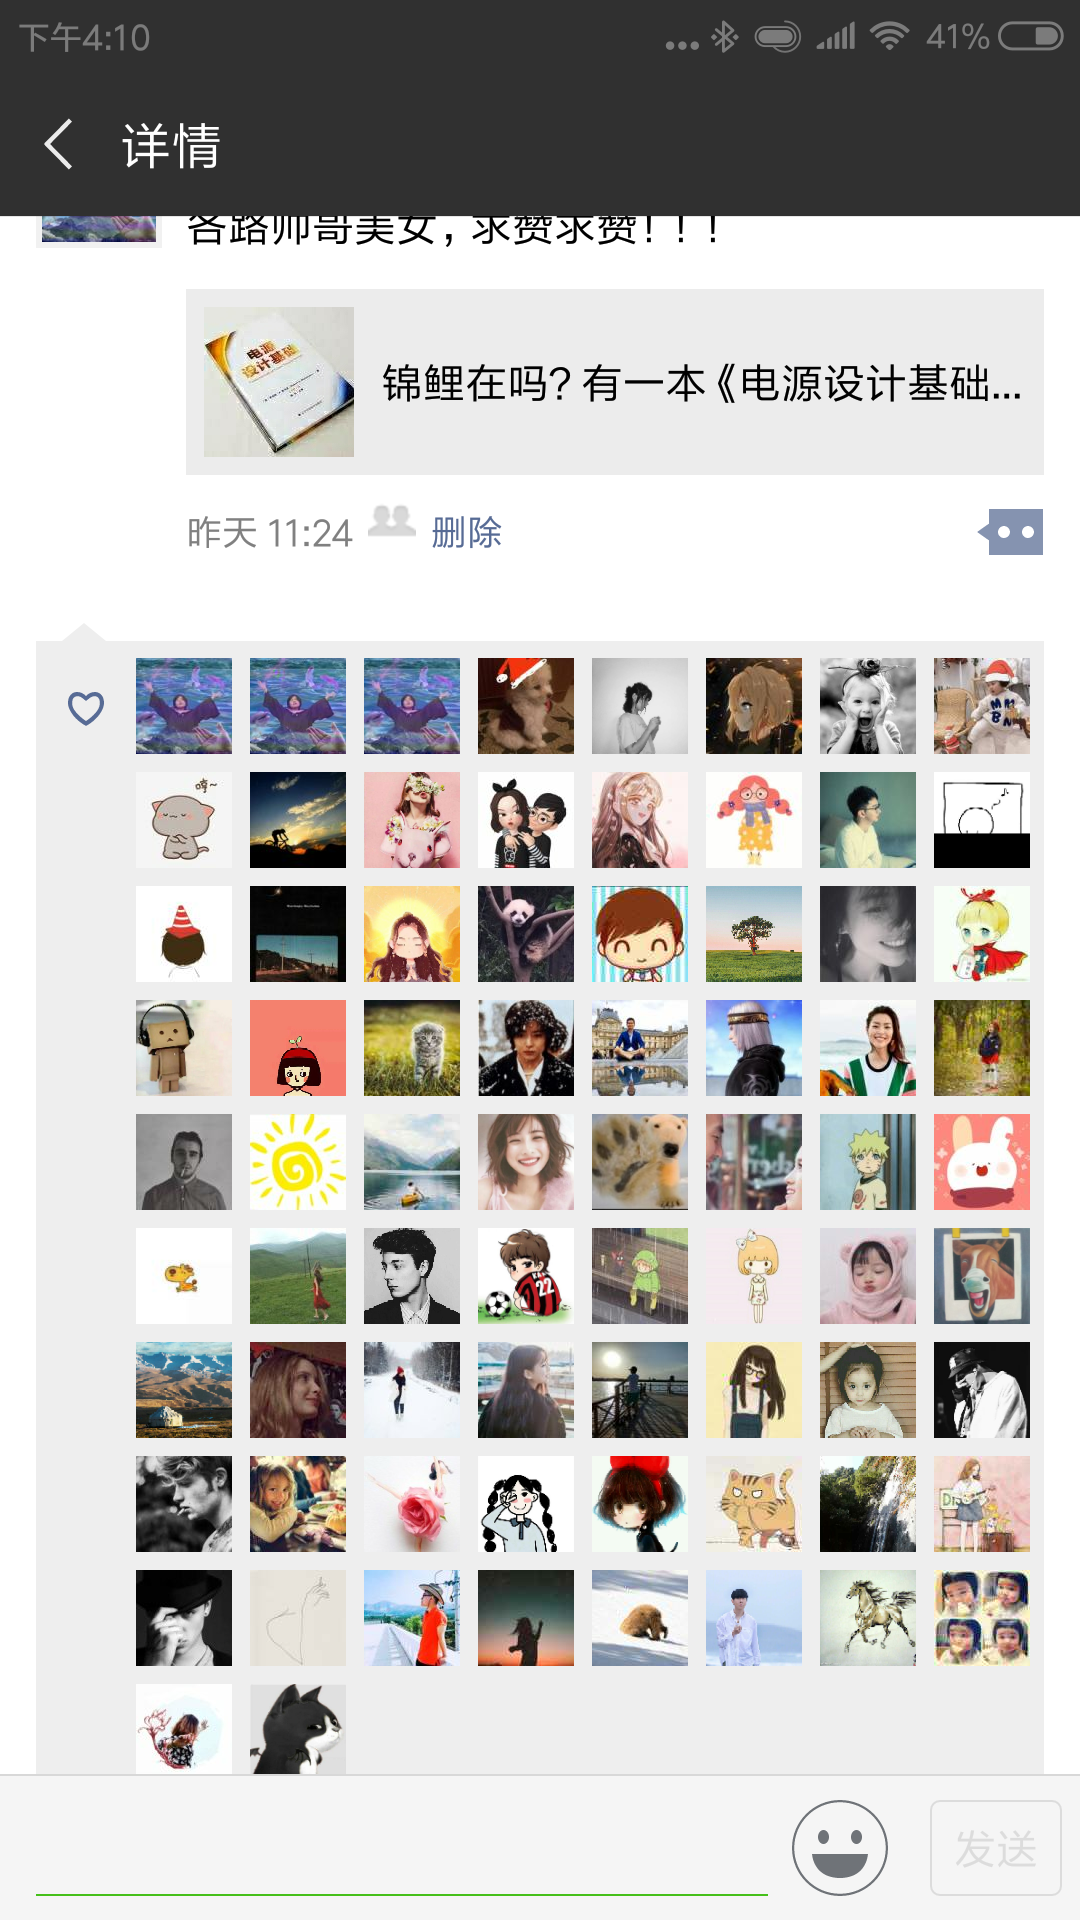 Screenshot_2018-12-11-16-10-08-413_com.tencent.mm.png